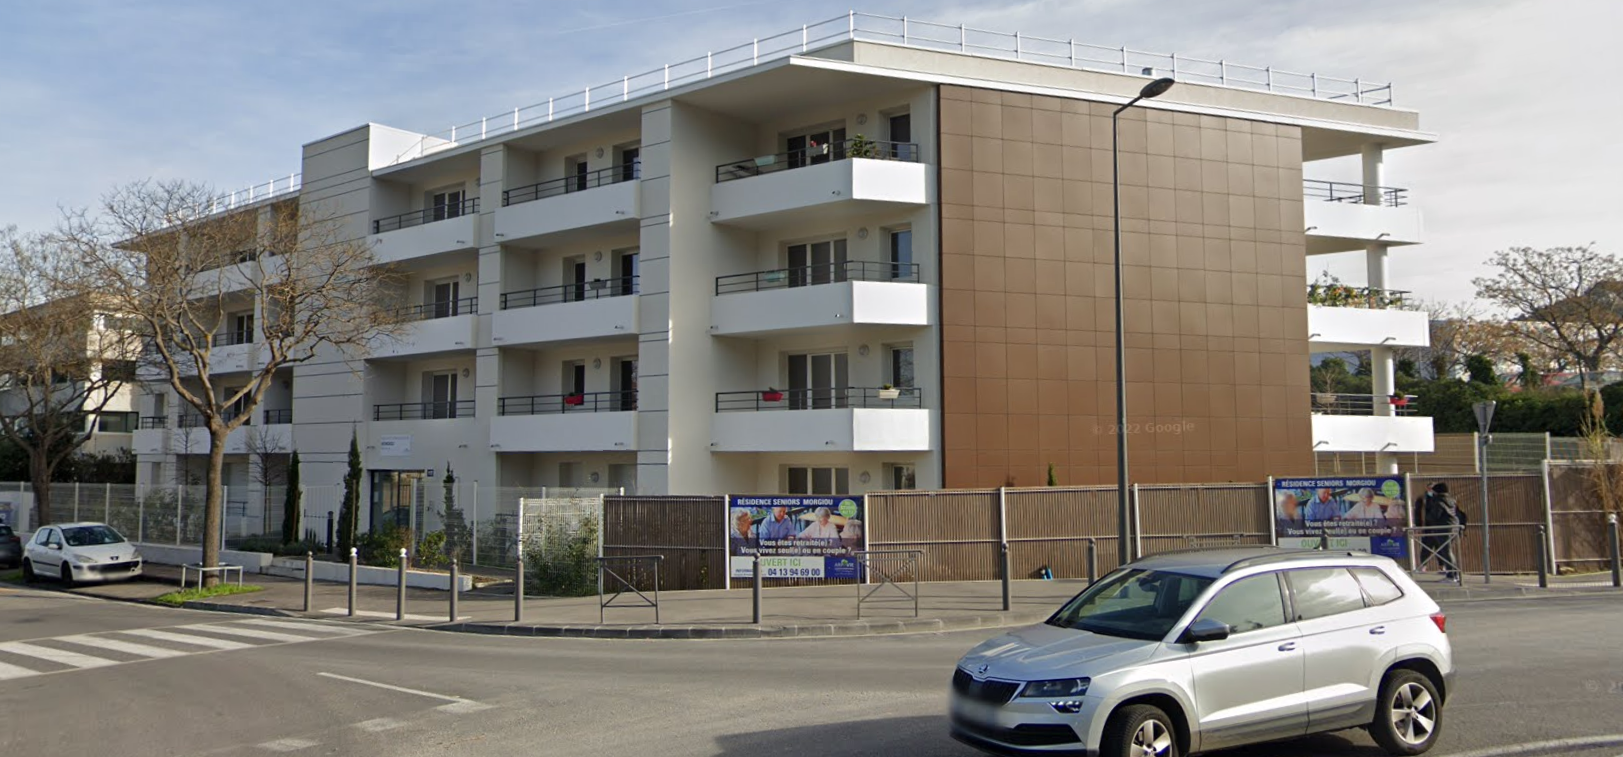 La résidence services seniors située à Marseille et exploitée par Arpavie @GoogleMaps